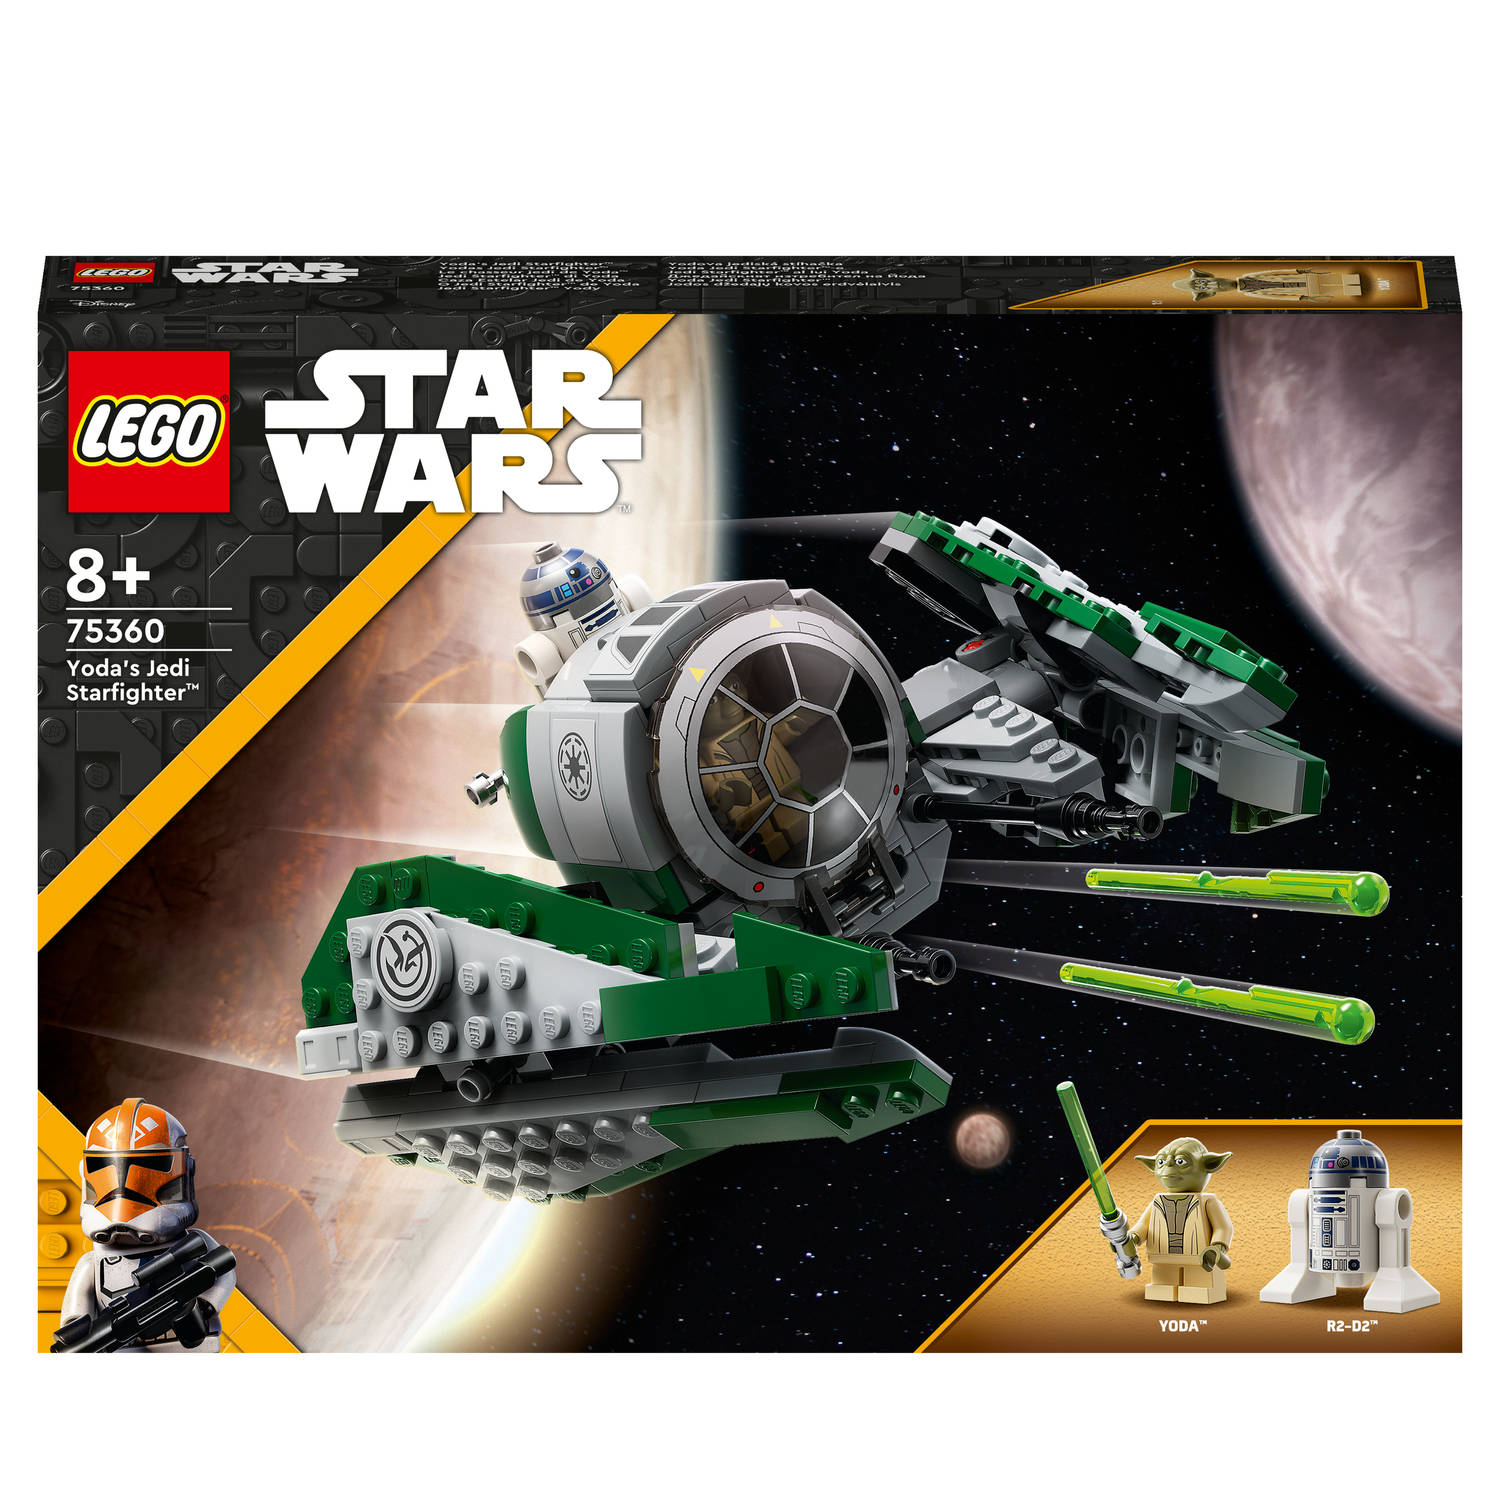 LEGOÂ®Star Wars 75360 Yoda's Jedi Starfighter